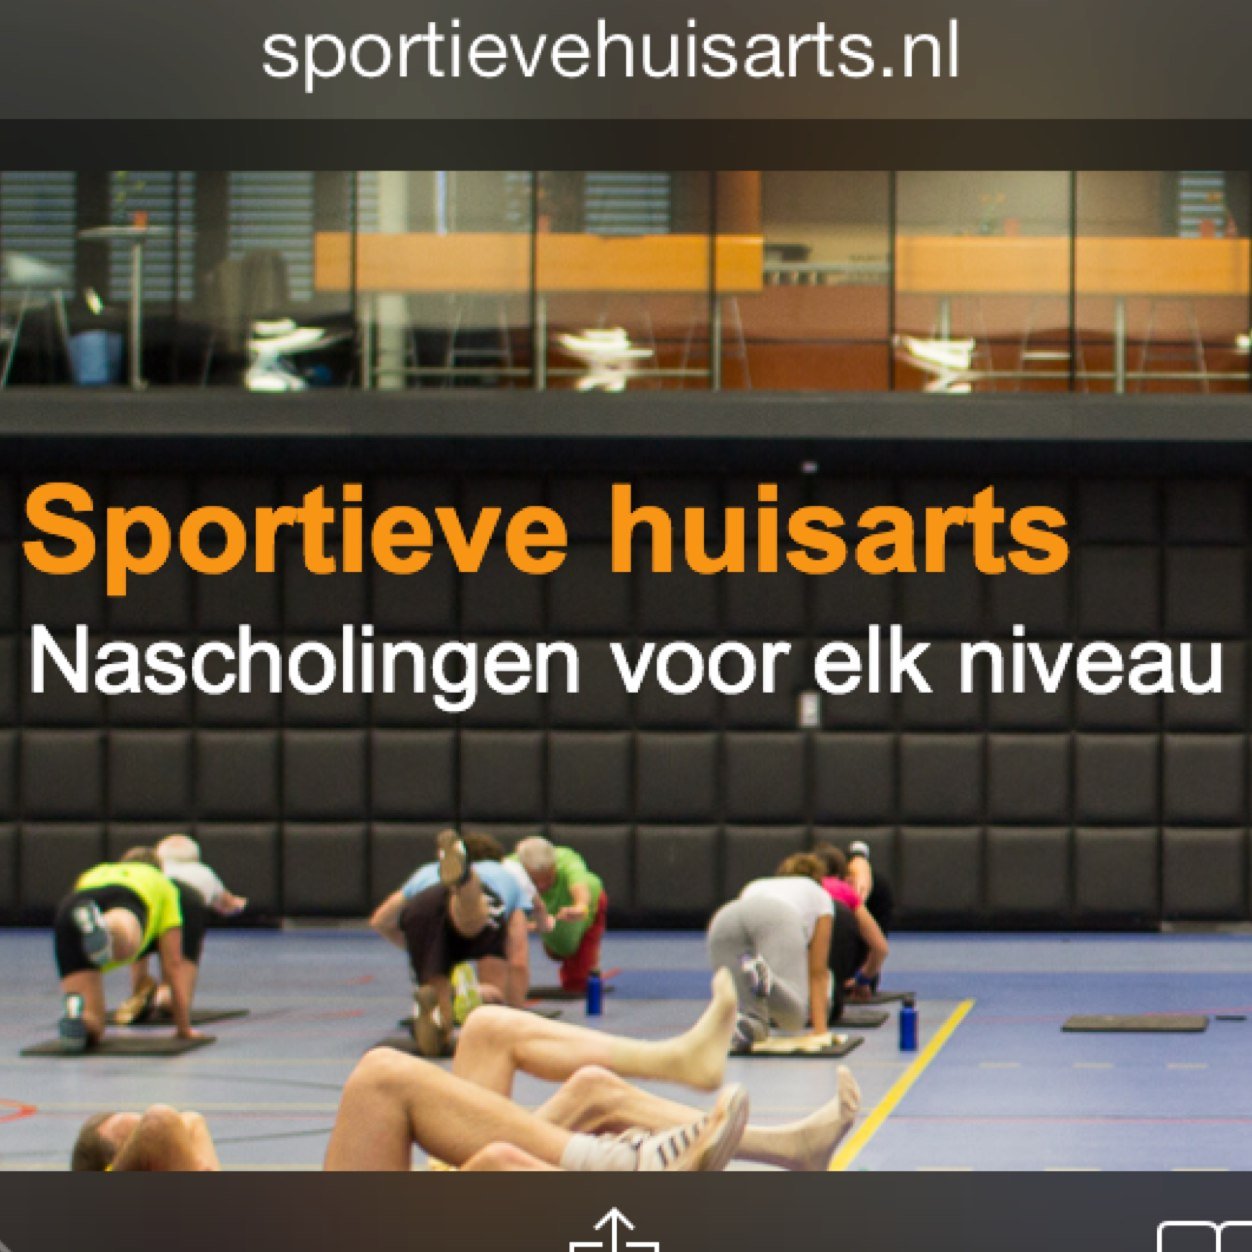 Sinds 2014 Nascholingen met sport. Anne Huisman, Matthijs van der Poel huisartsen regio Rotterdam https://t.co/MXfL8Hhjh9 tijd!